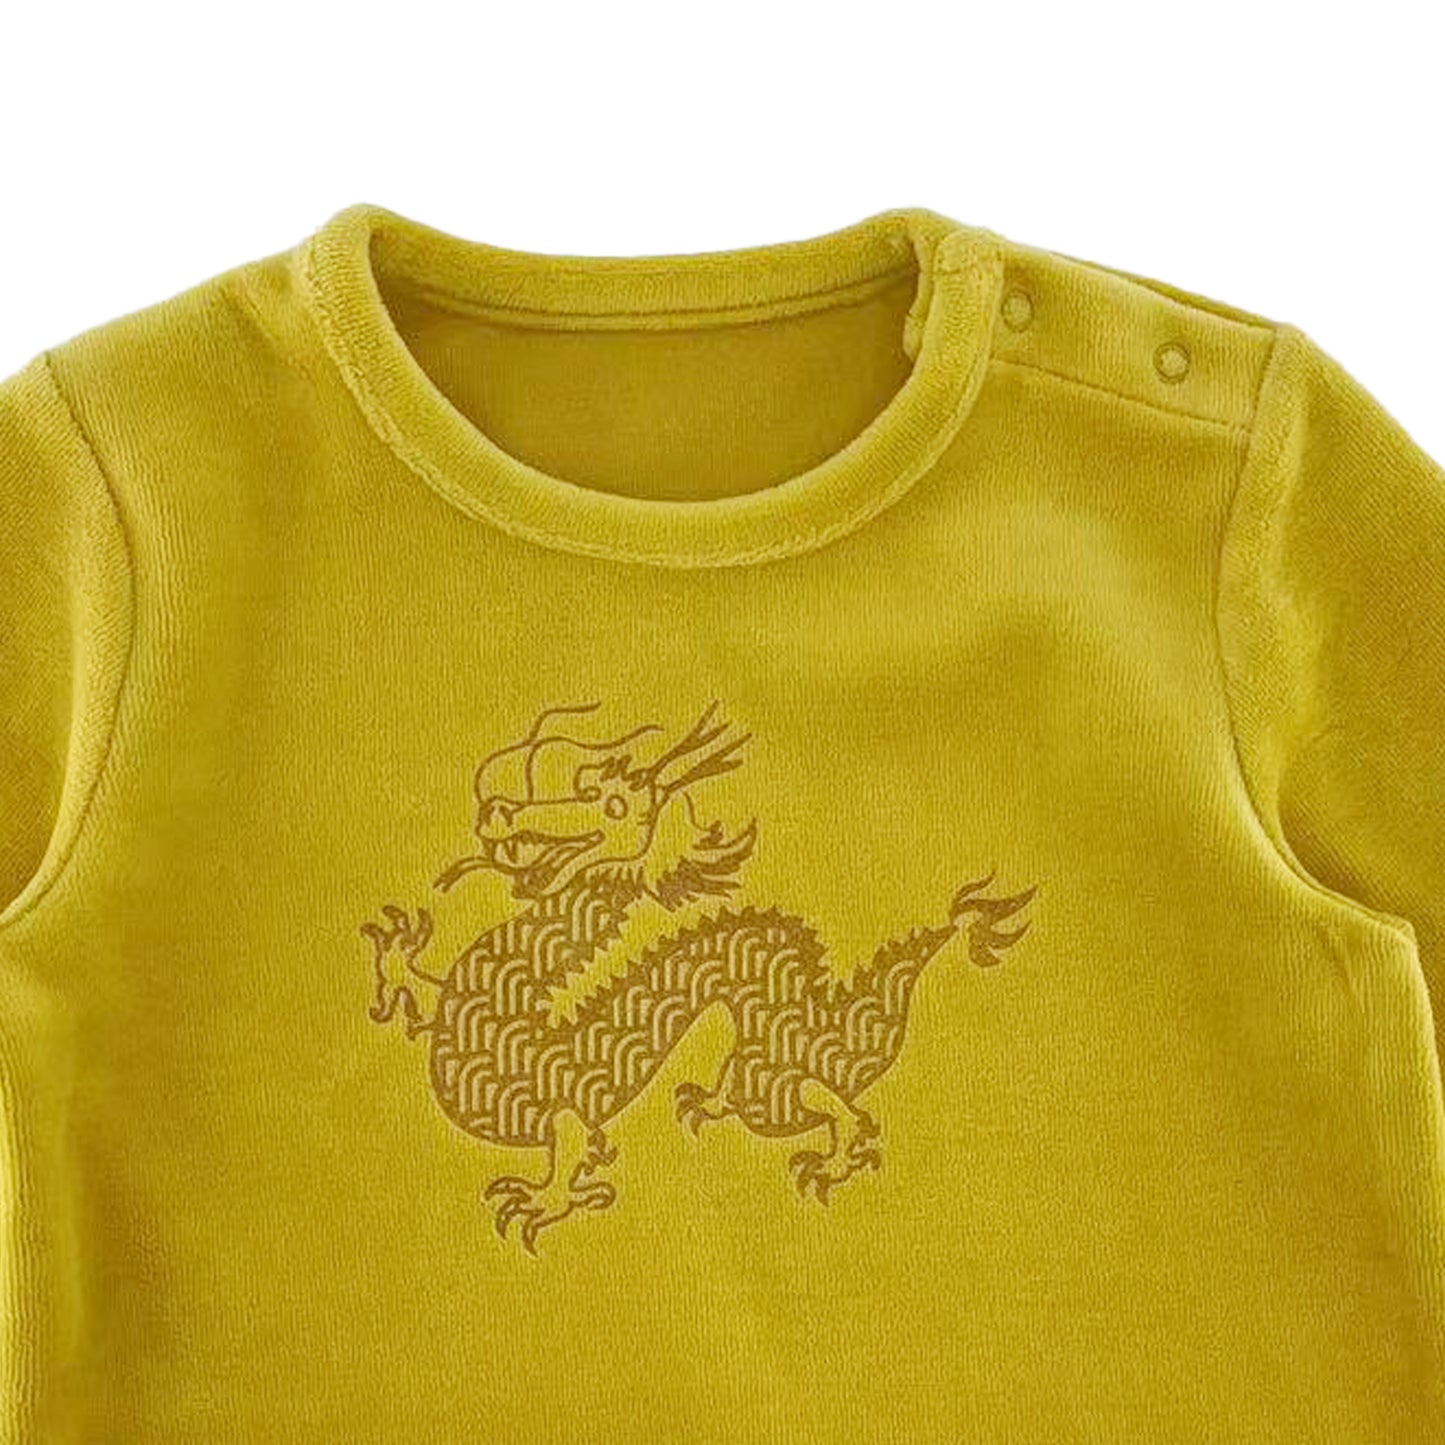 嬰兒服裝 - 純色絲絨龍年限量版運動套裝